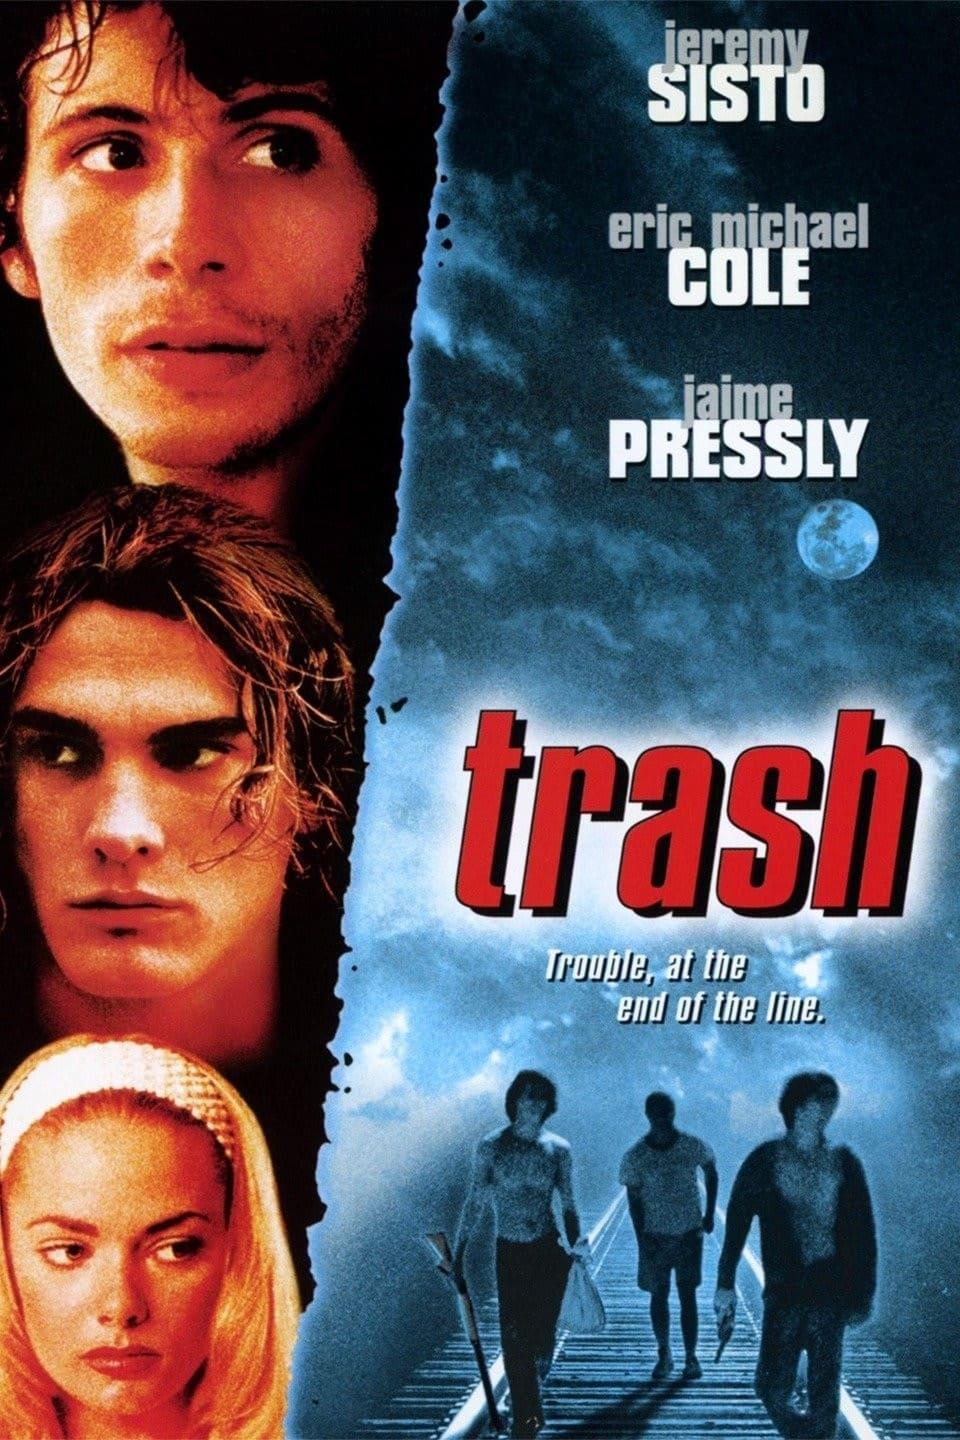 Trash poster